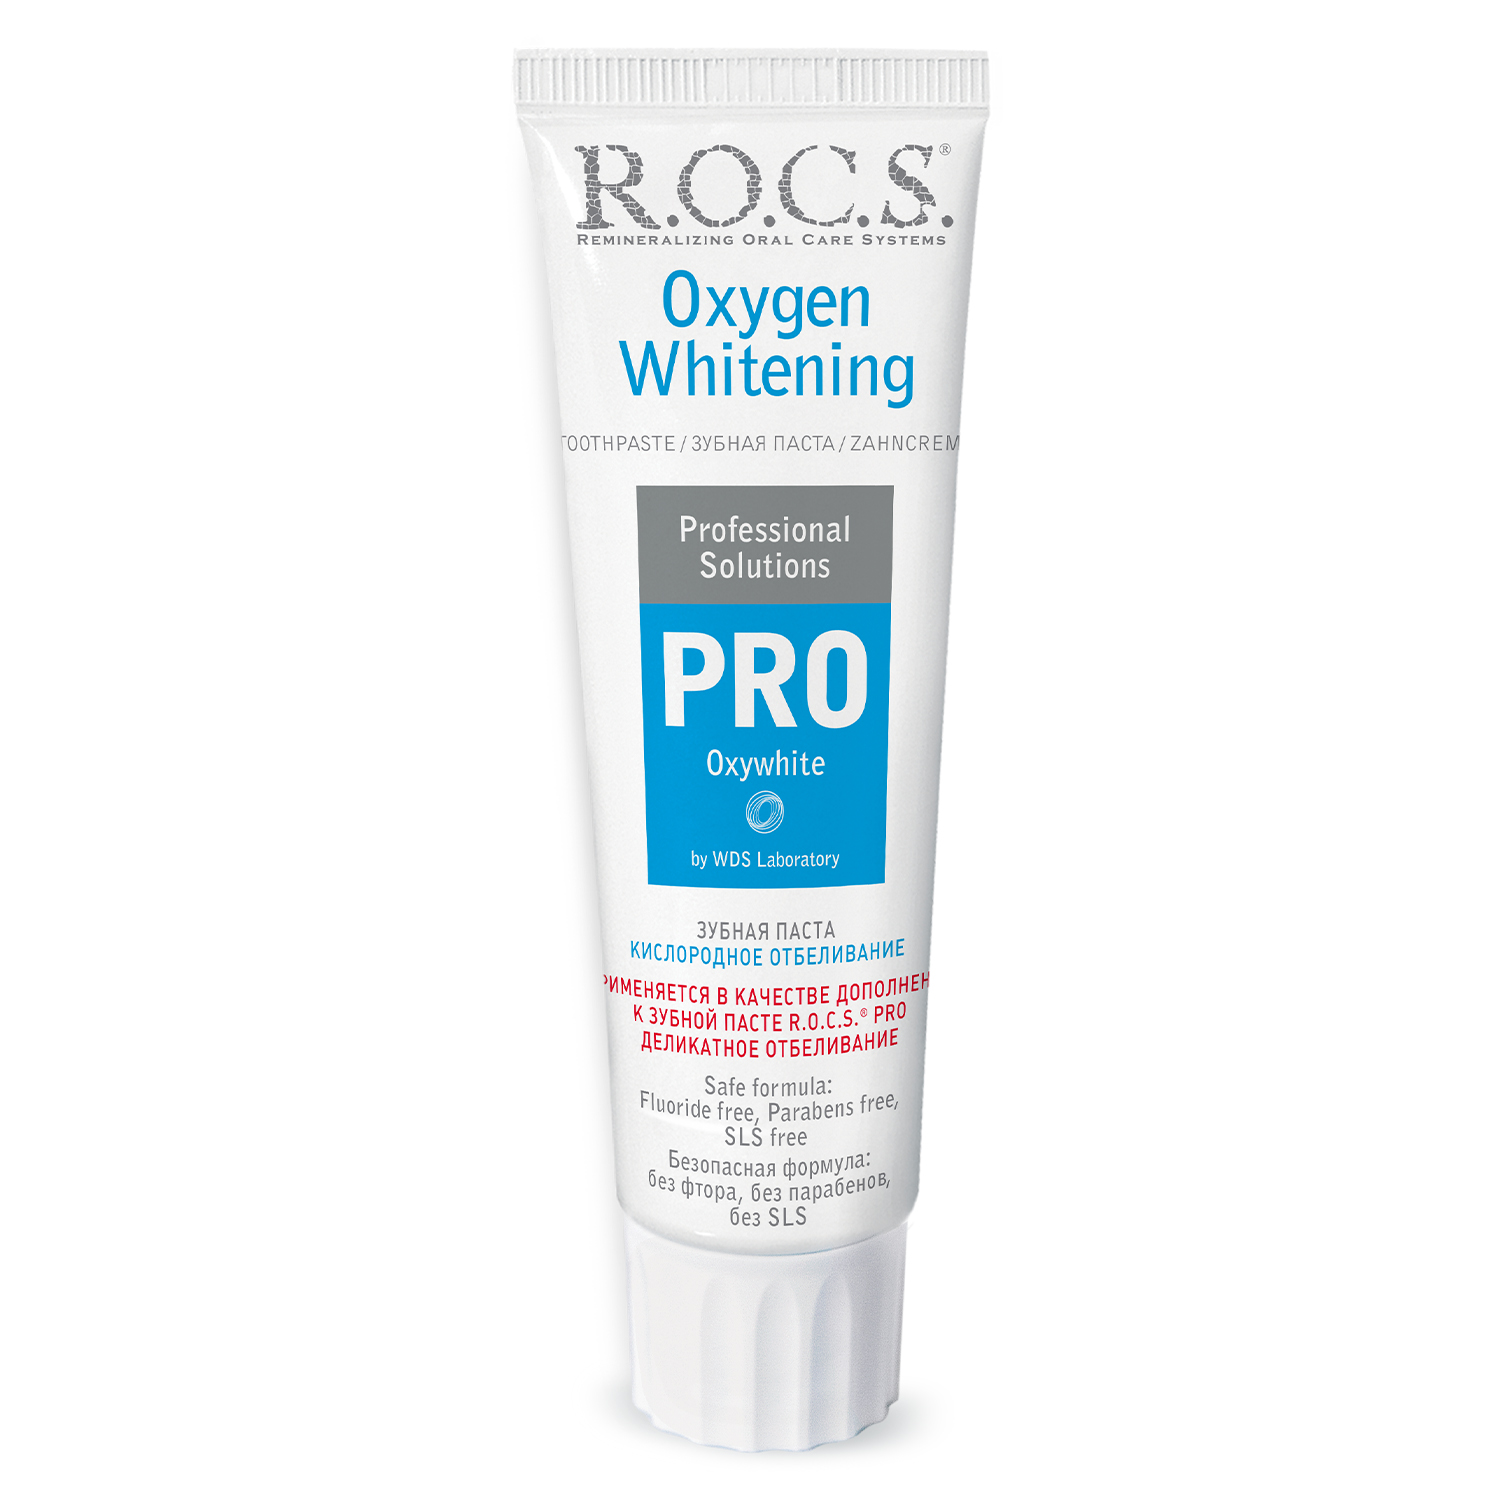 Зубная паста R.O.C.S. Pro Кислородное отбеливание 60 г r o c s pro зубная паста кислородное отбеливание 60 гр